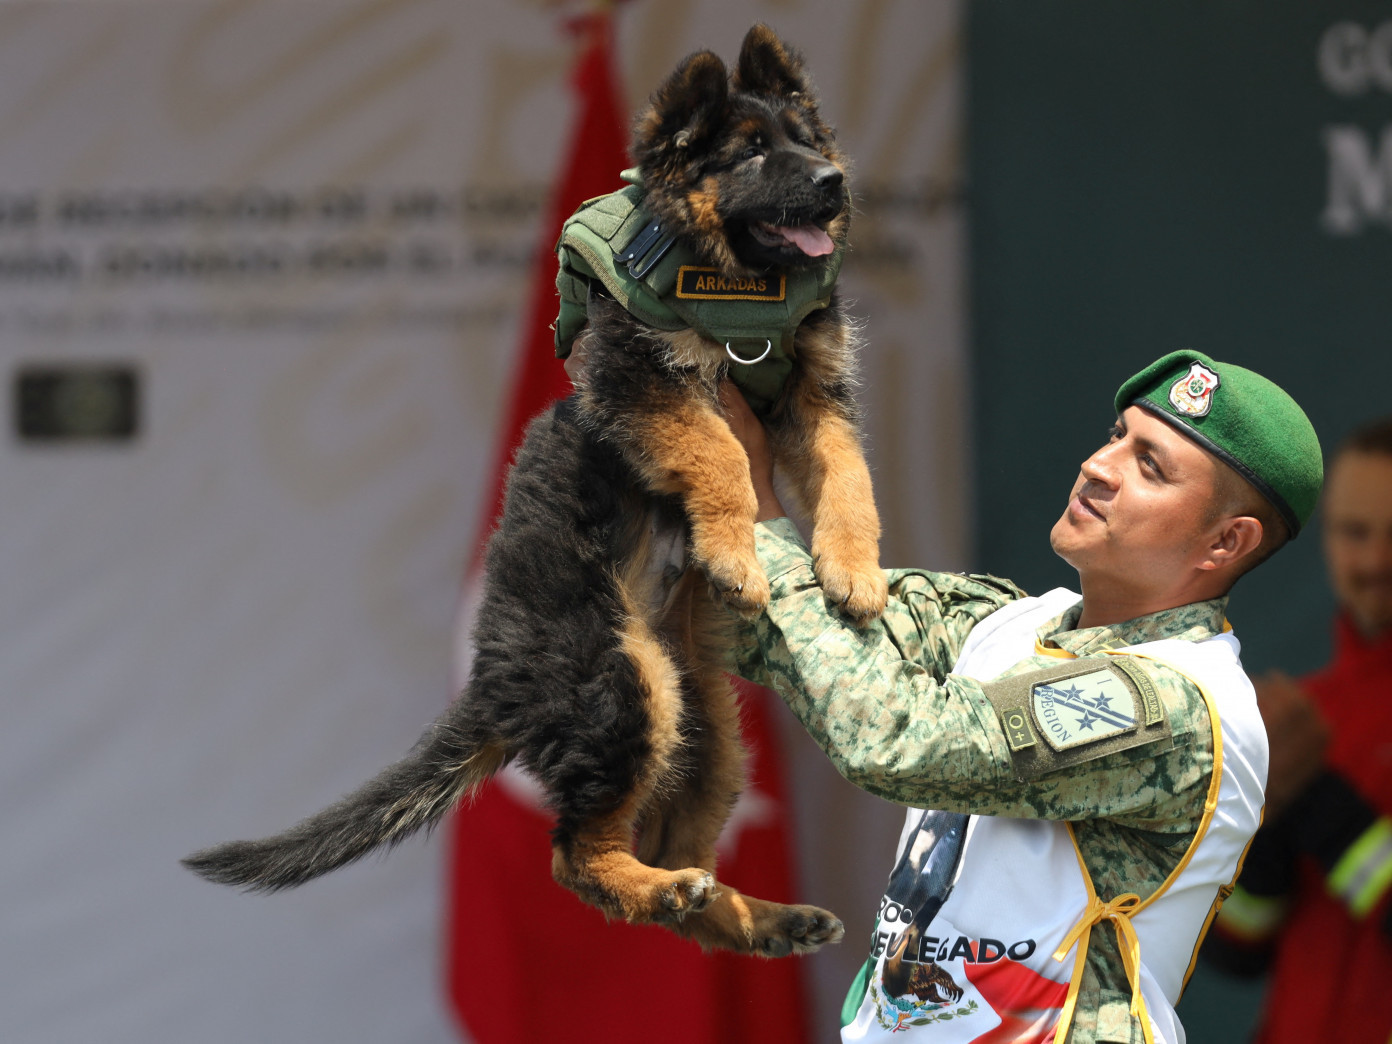 ФОТО: Газар хөдлөлтийн голомтод ажиллах үеэр амь үрэгдсэн аврагч нохойг хүндэтгэж Турк улс Мексикт гөлөг бэлэглэв